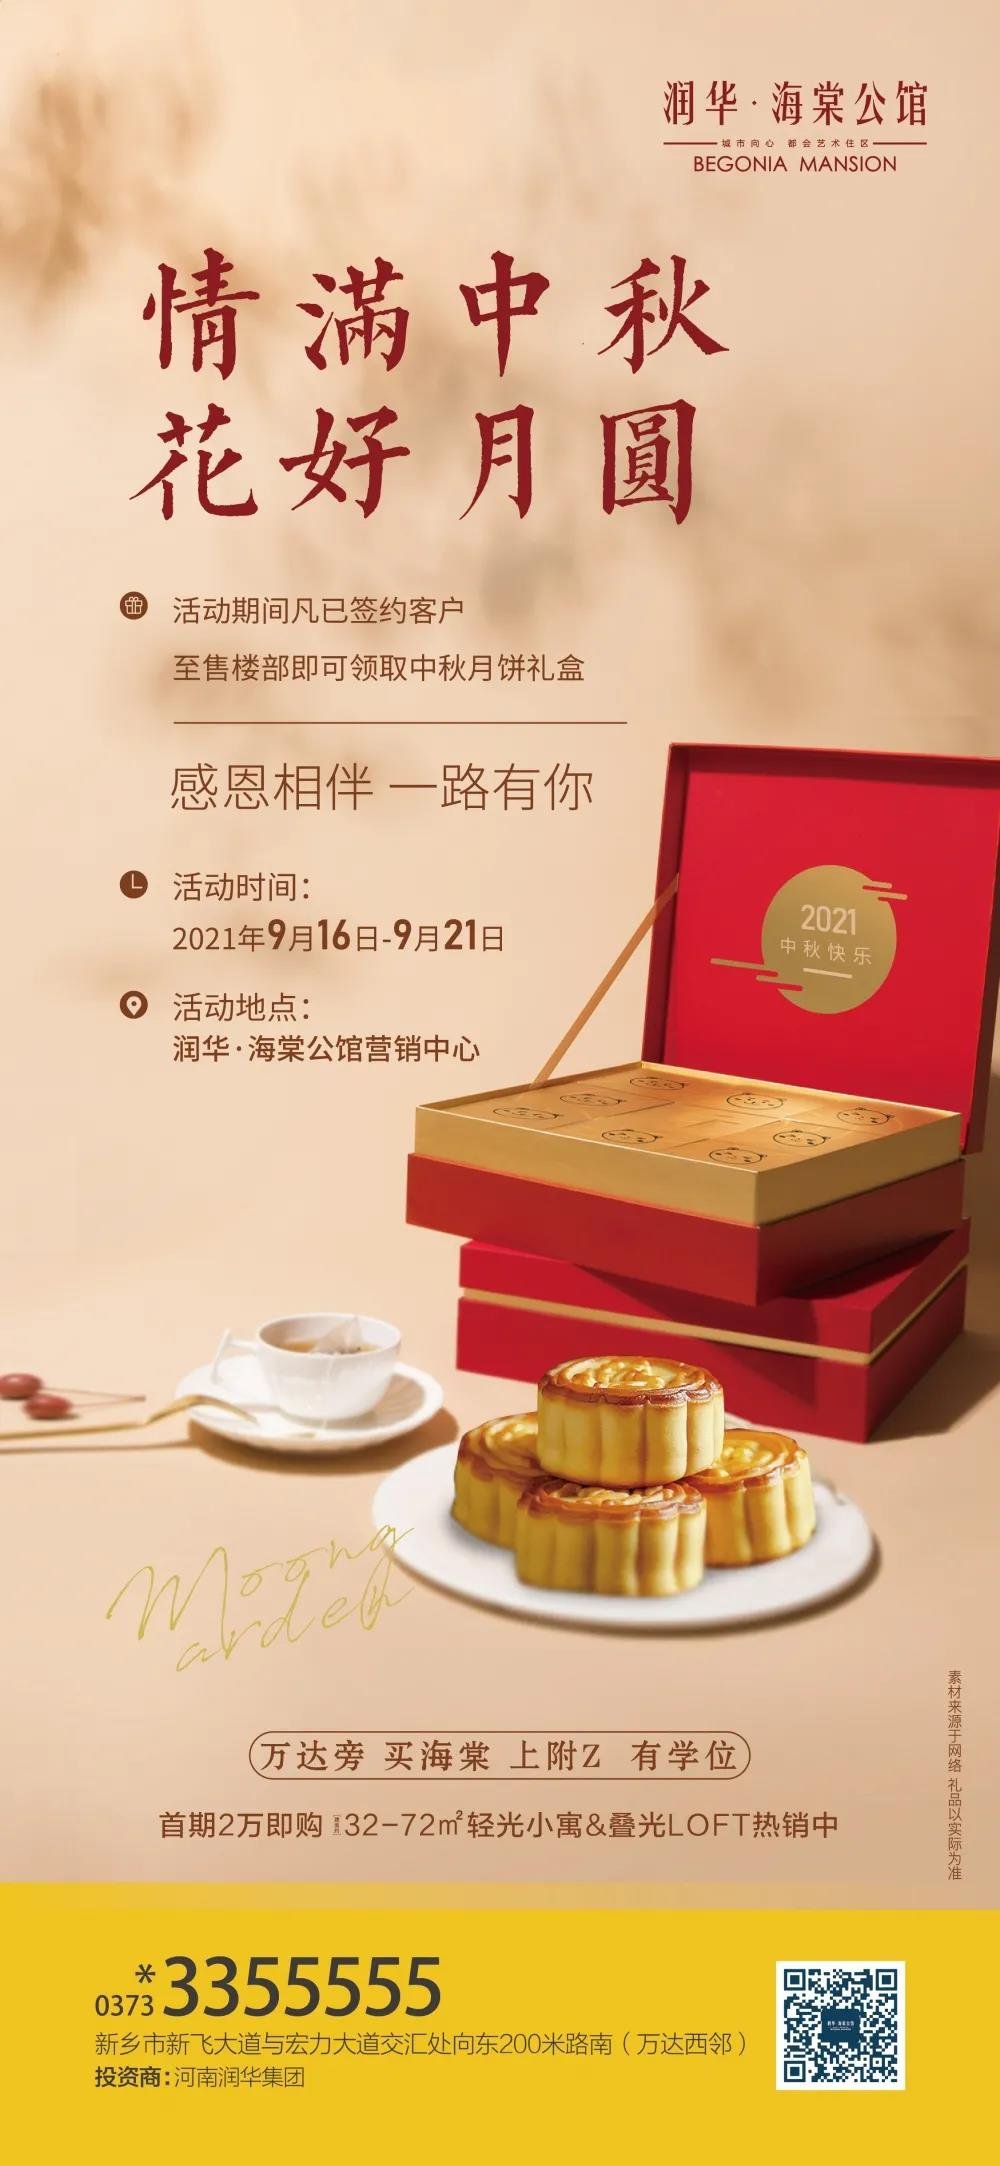 润华·海棠公馆丨客户您的专属中秋礼盒已驾到，等您来领